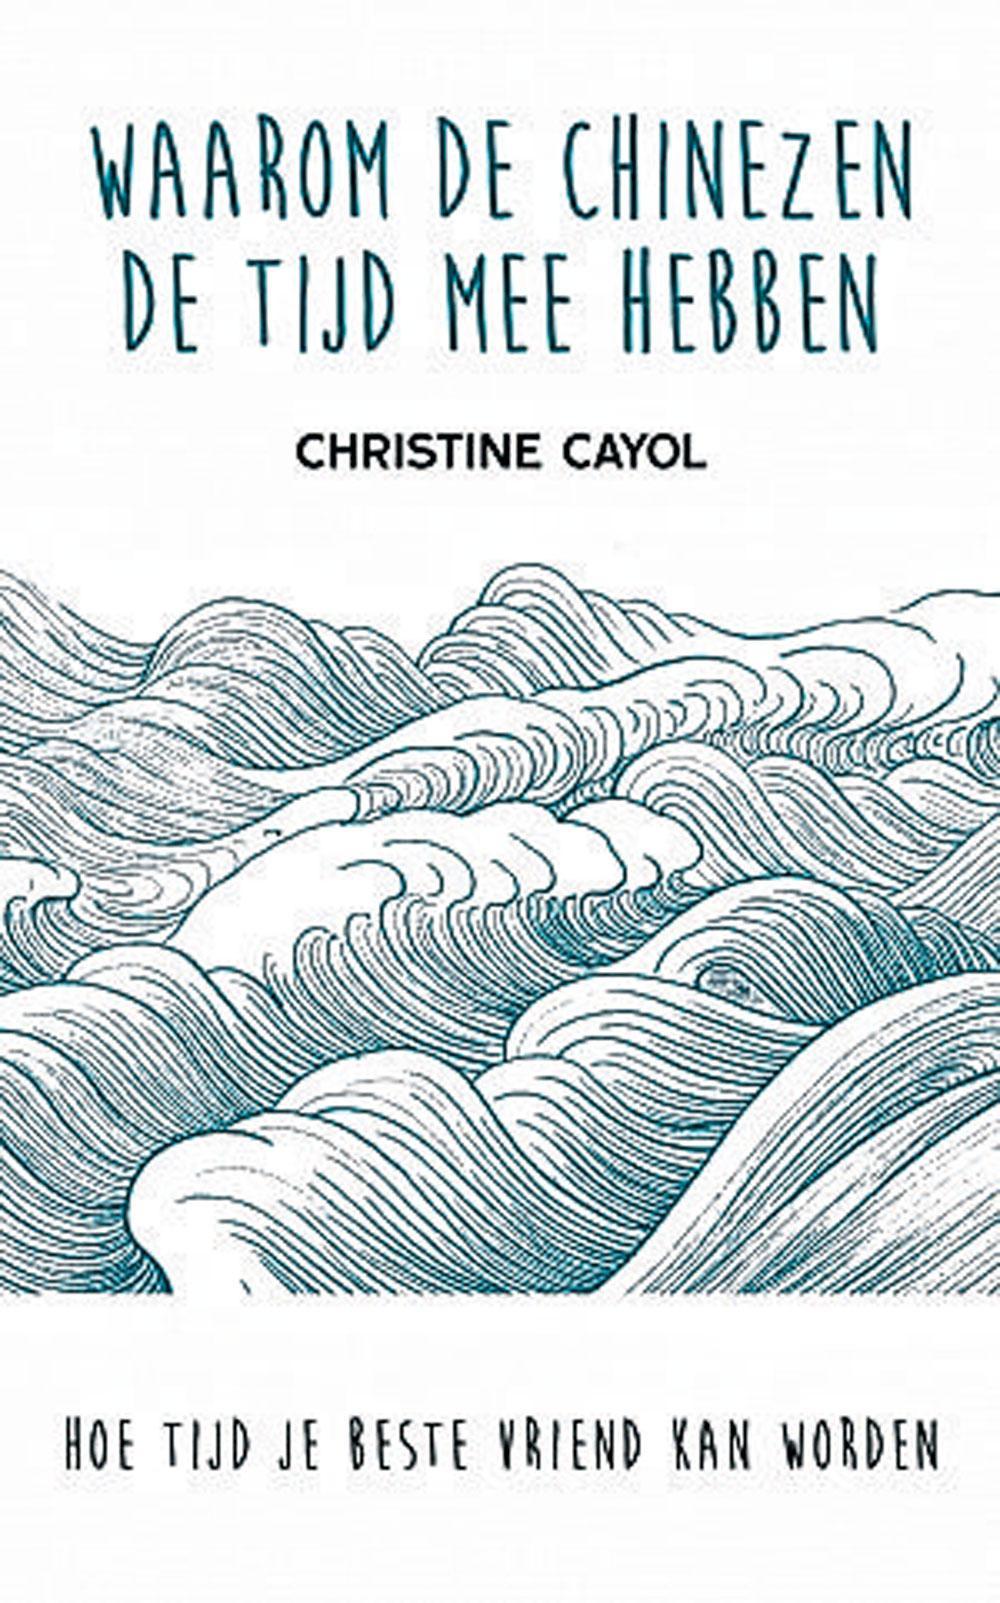 Christine Cayol, Waarom de Chinezen de tijd mee hebben, Uitgeverij Ten Have, 256 blz., 20 euro.